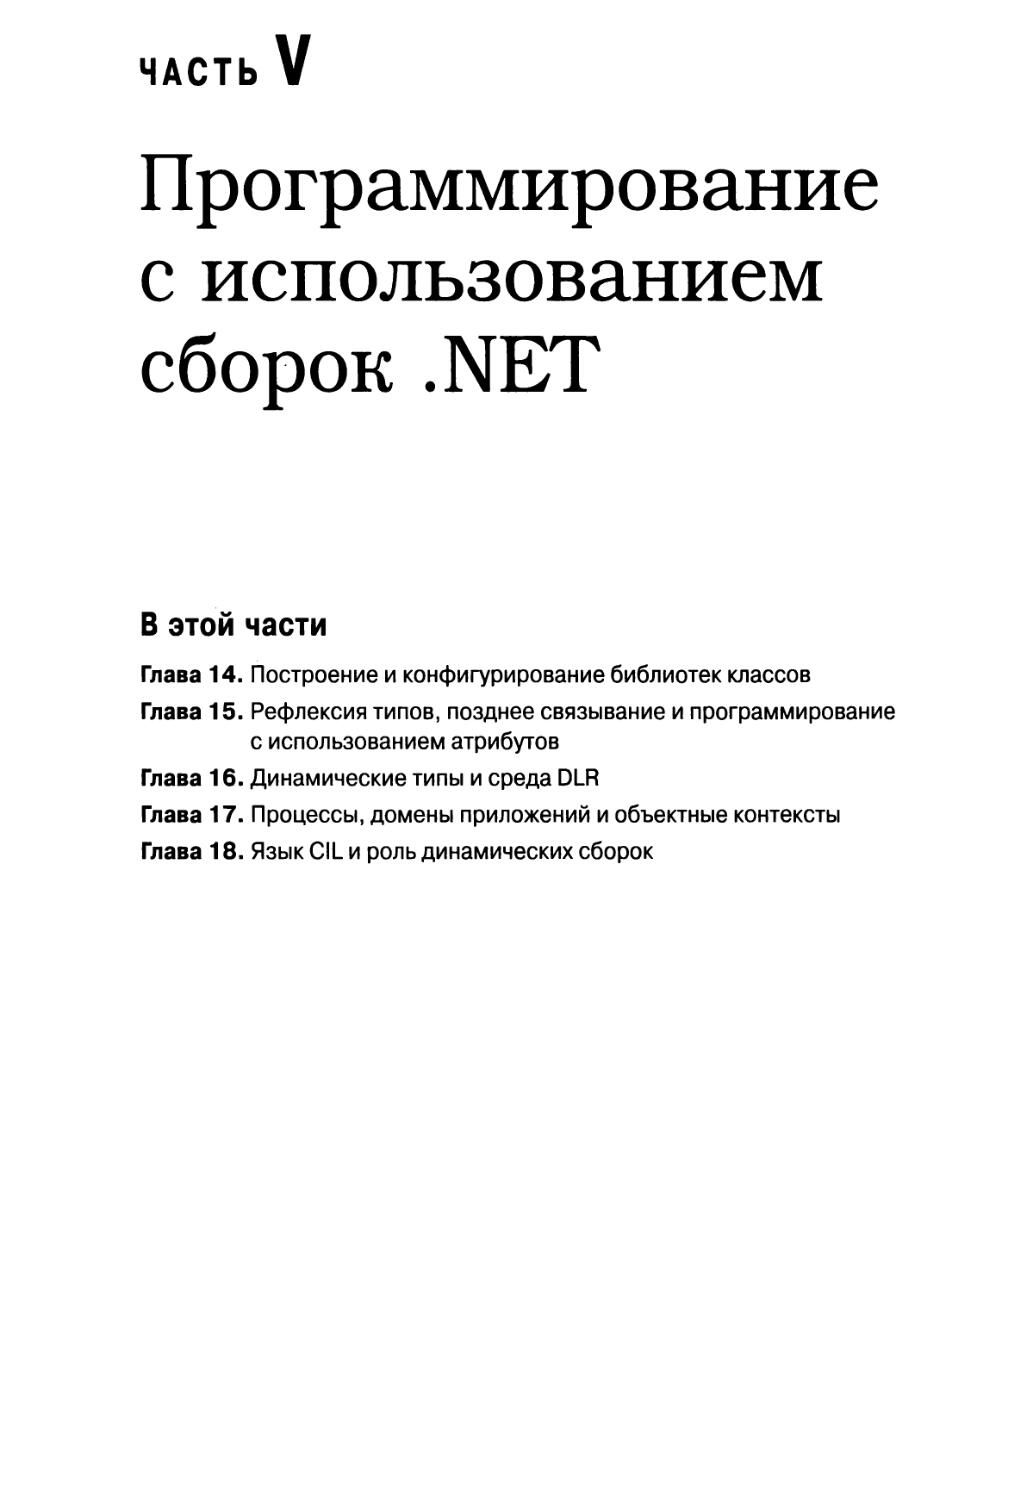 Часть V. Программирование с использованием сборок .NET